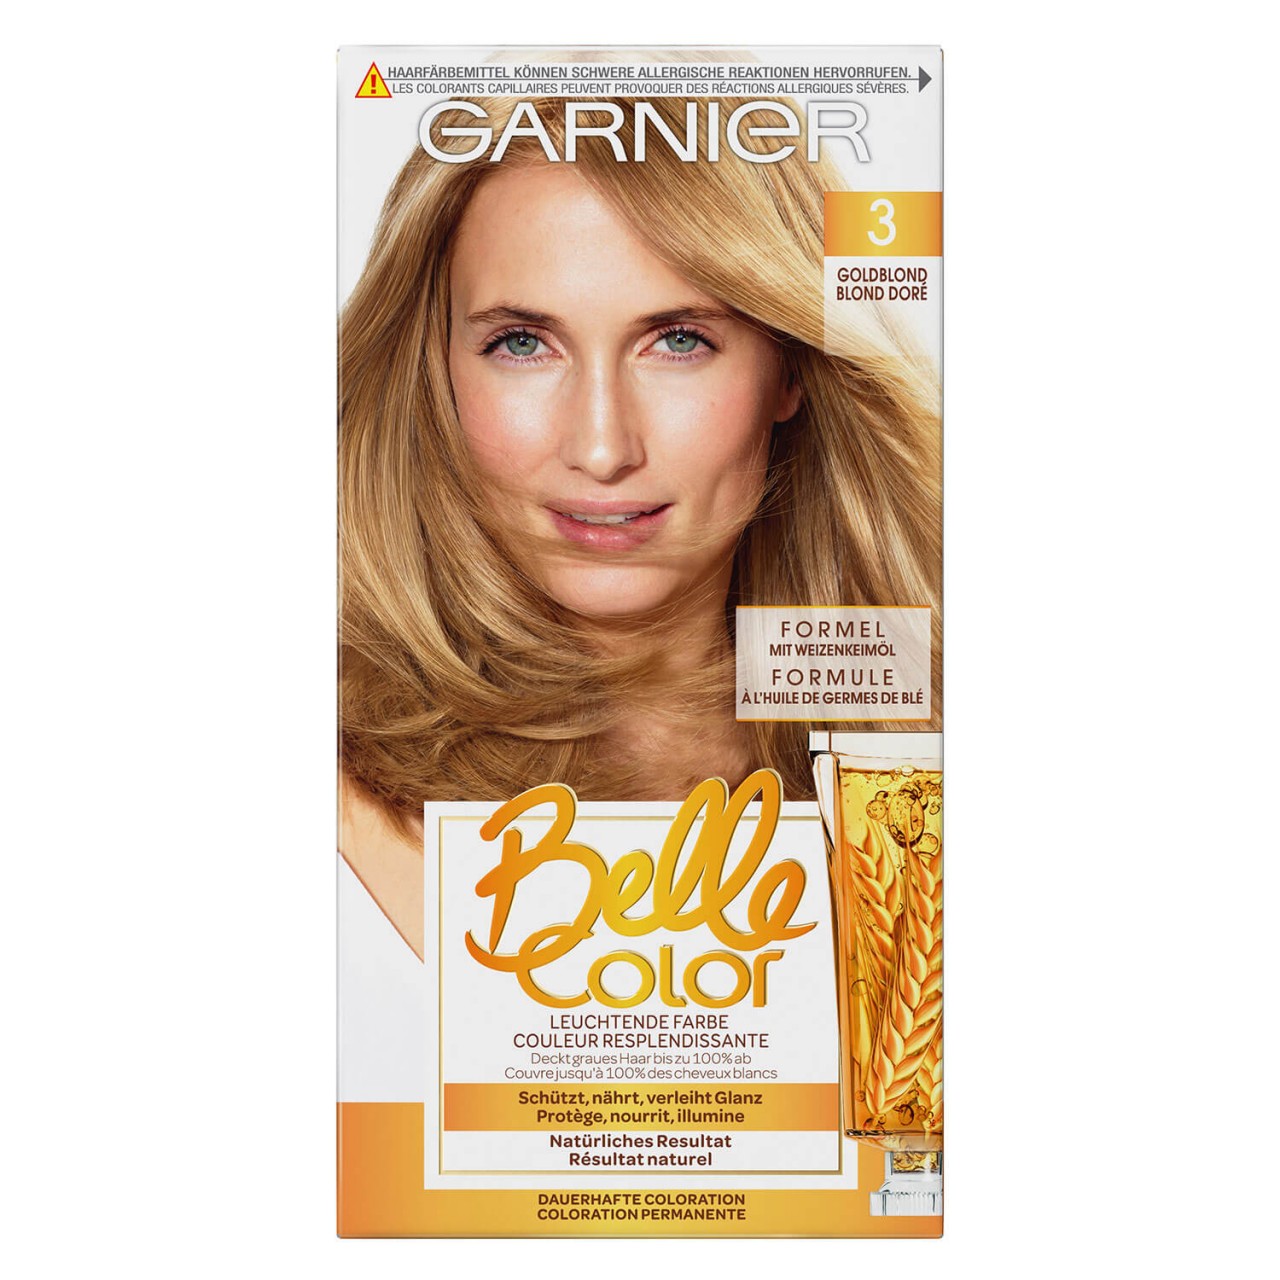 Belle Color - 3 Goldblond von GARNIER